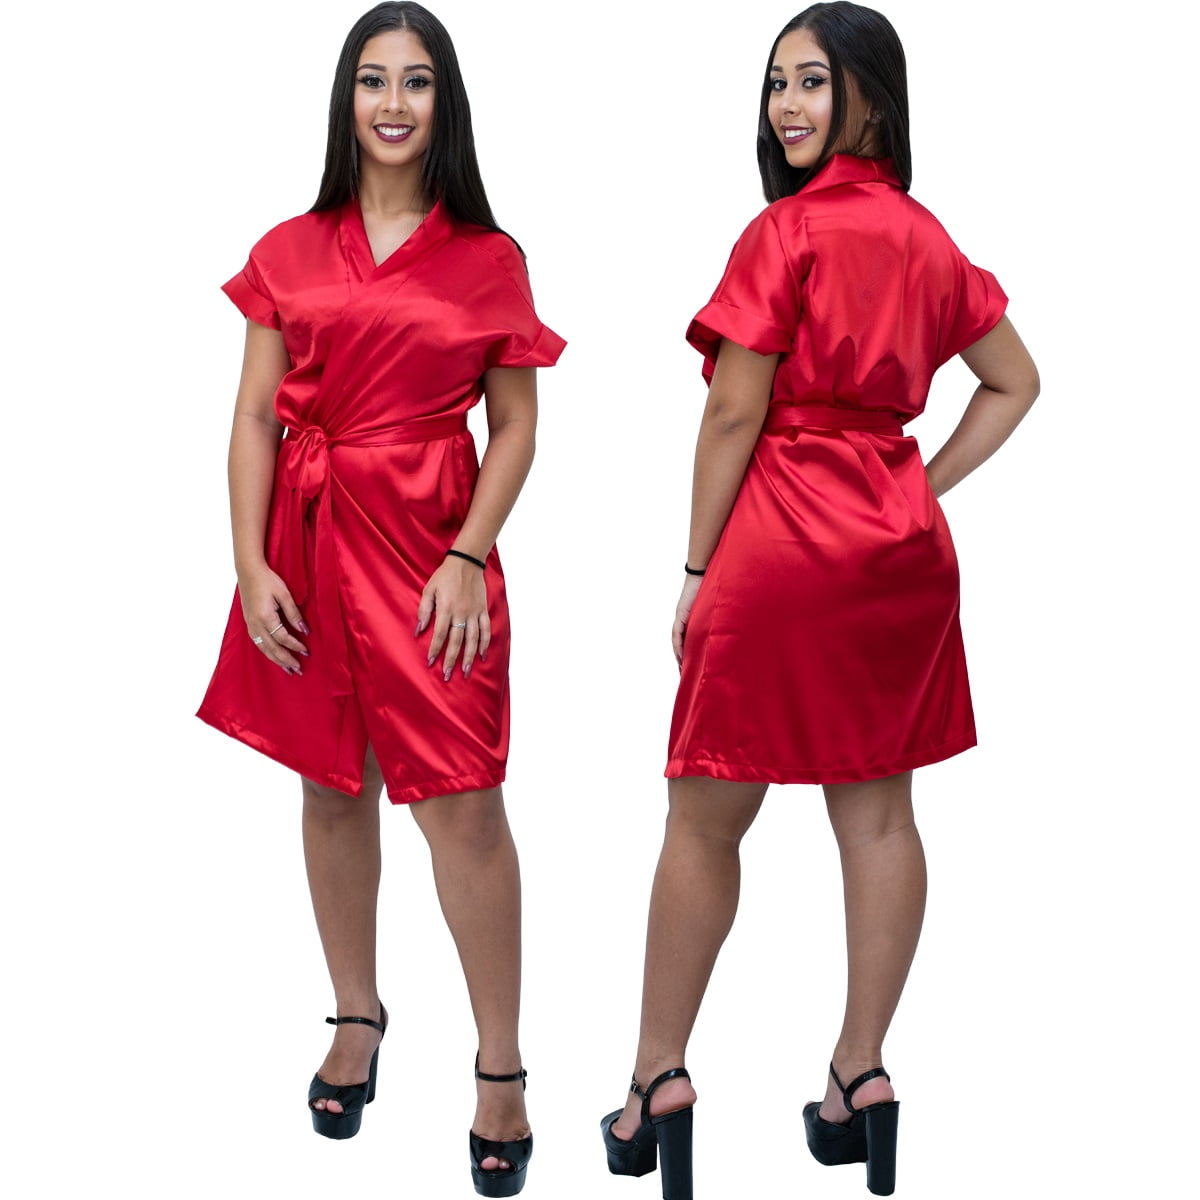 Robe Feminino de Cetim Com Elastano Manga Curta Cor Vermelho Ferrari 460 